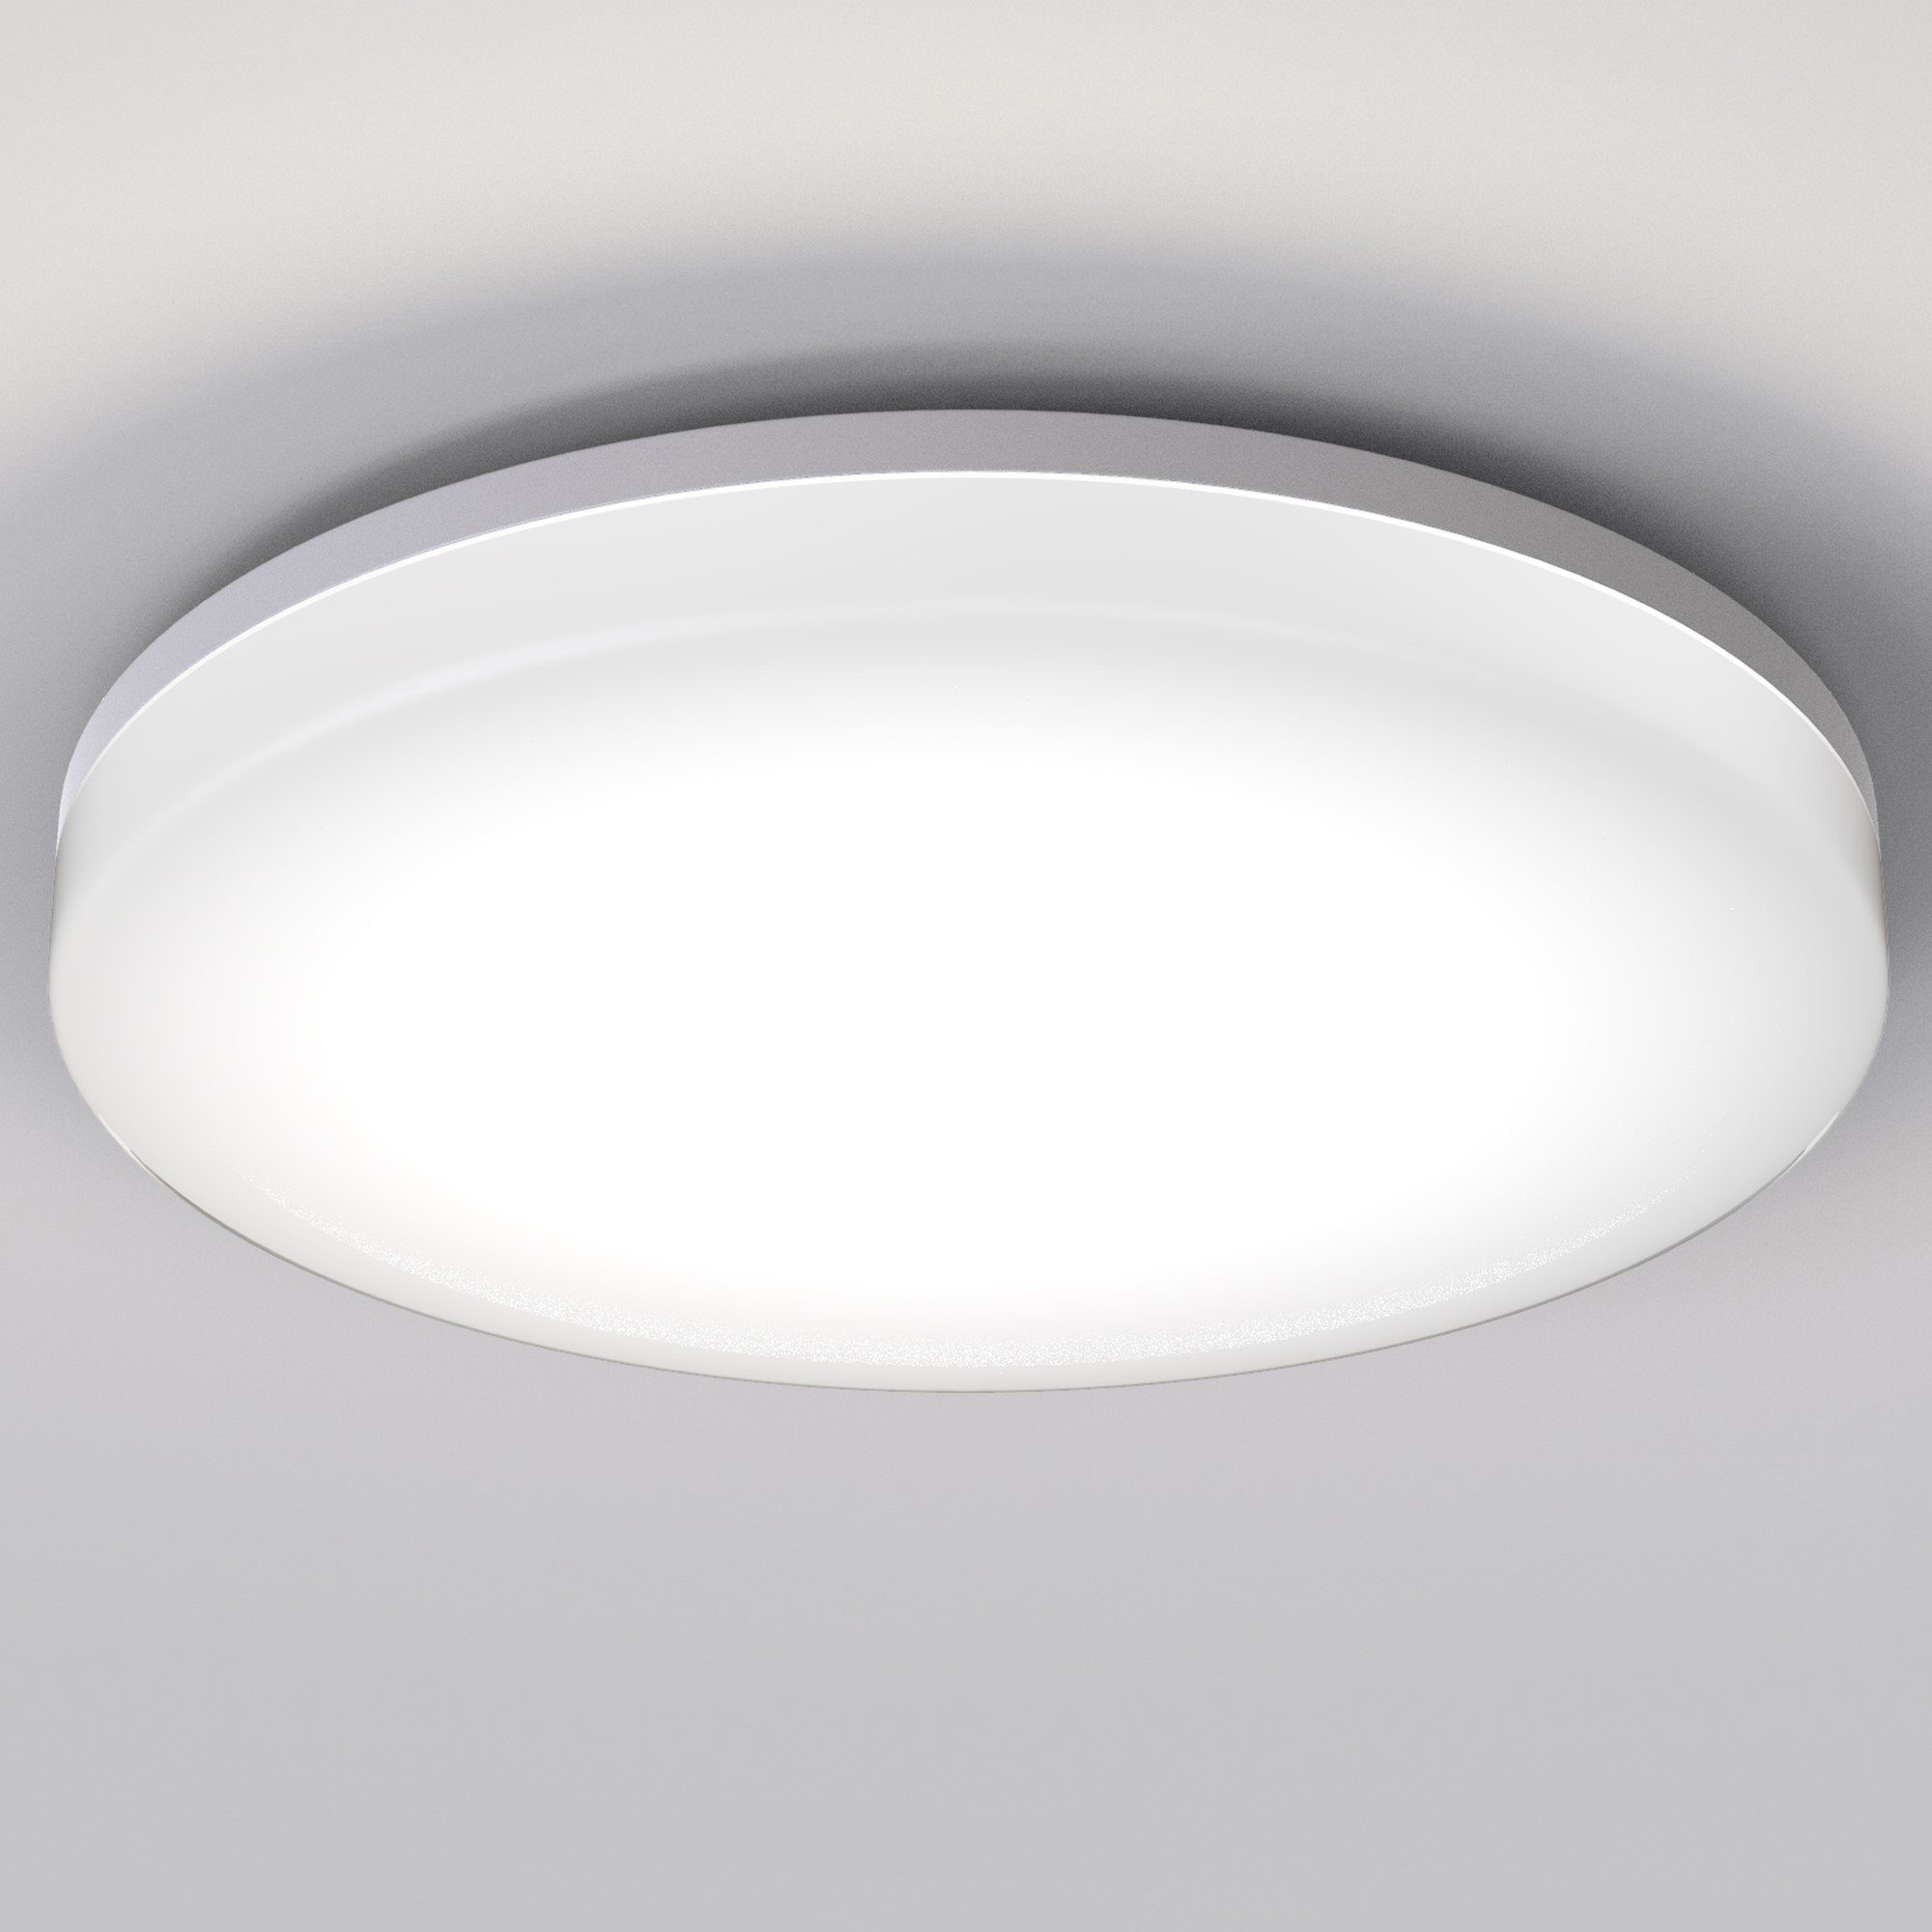 LED Deckenleuchte Badleuchte Küche Deckenlampe Wohnzimmer Leuchte 12W/24W/36W 